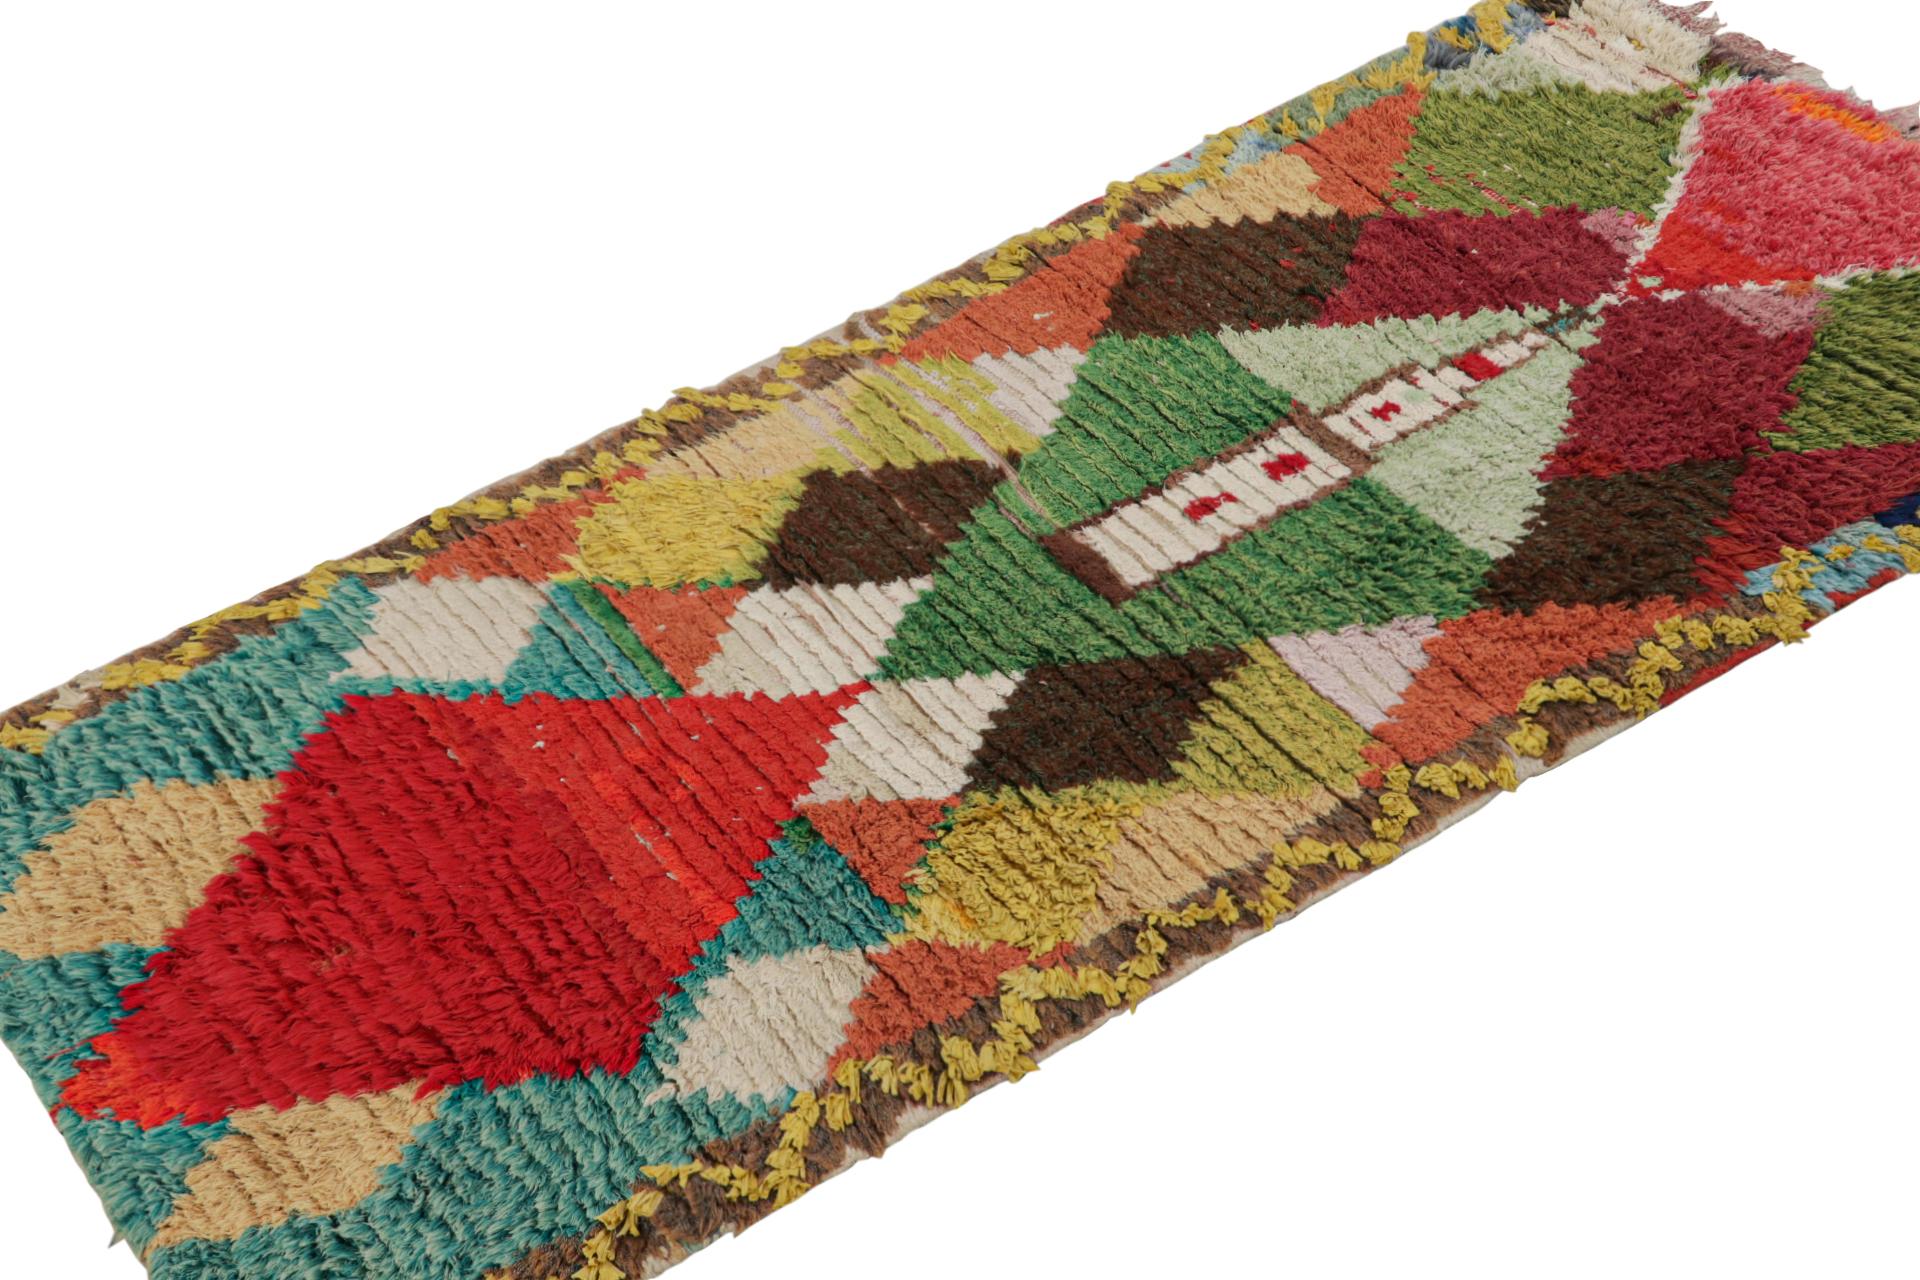 Dieser marokkanische 3x6-Läufer aus Wolle, handgeknüpft um 1940-1950, stammt vermutlich vom Stamm der Azilal. 

Über das Design:

Dieses Stück erfreut sich an skurrilen Rot-, Blau-, Grün- und Brauntönen in Rauten und anderen primitivistischen